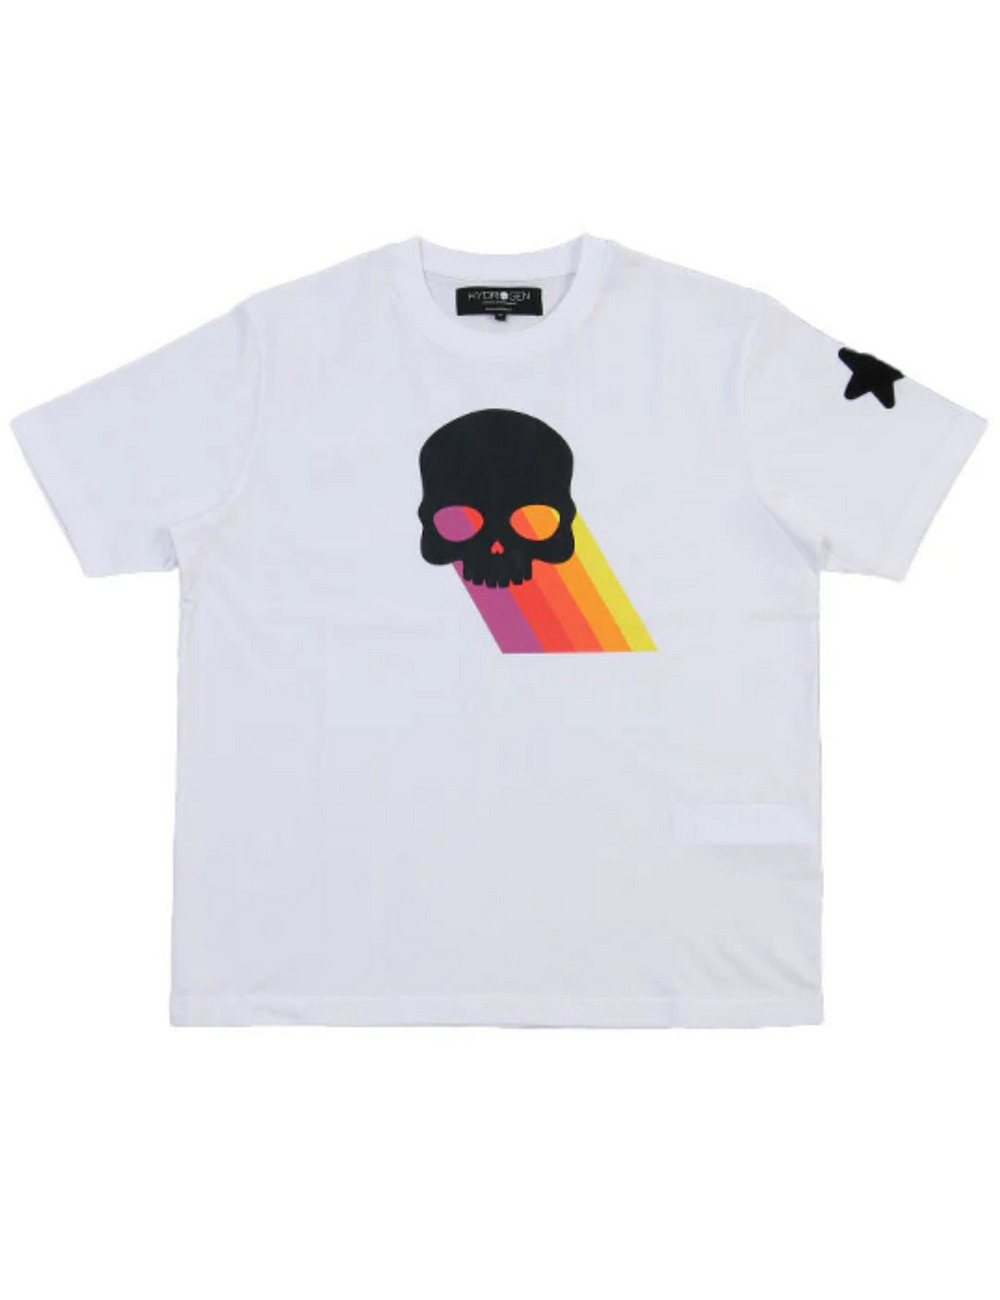 レインボースカルTシャツ(半袖) / RAINBOW SKULL T SHIRT 詳細画像 ホワイト 1